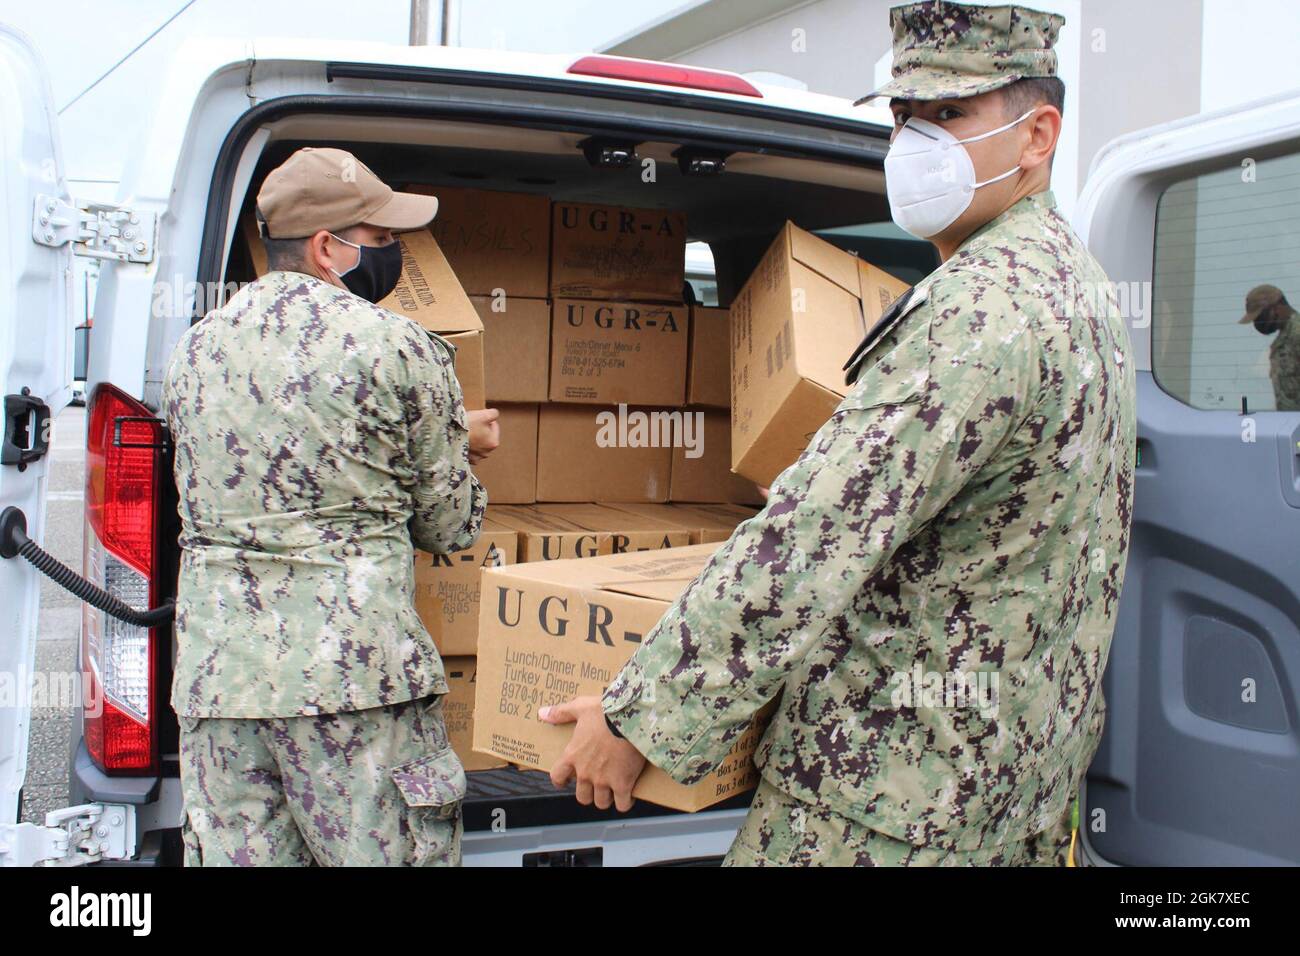 HAGÅTÑA, Guam (dal 1, 2021) - la base navale statunitense Guam (NBG) l'ufficio di Chaplain insieme ai marinai dell'ospedale navale statunitense Guam ha consegnato quasi 2,000 chili di cibo e prodotti cartacei alla cucina per zuppe Kamalen Karidat a Hagåtña il 31 agosto. Gli articoli alimentari sono stati raccolti attraverso la campagna Feed Families Campaign (FFFC) del 2021, che ha avuto luogo dal 1 giugno al 31 agosto e ha evidenziato un'estate di doni, insieme a promemoria per donare durante tutto l'anno. Durante la campagna, più di 20,000 libbre di cibo è stato distribuito alla cucina locale della zuppa e gli uffici dei sindaci del villaggio coordinati da Foto Stock